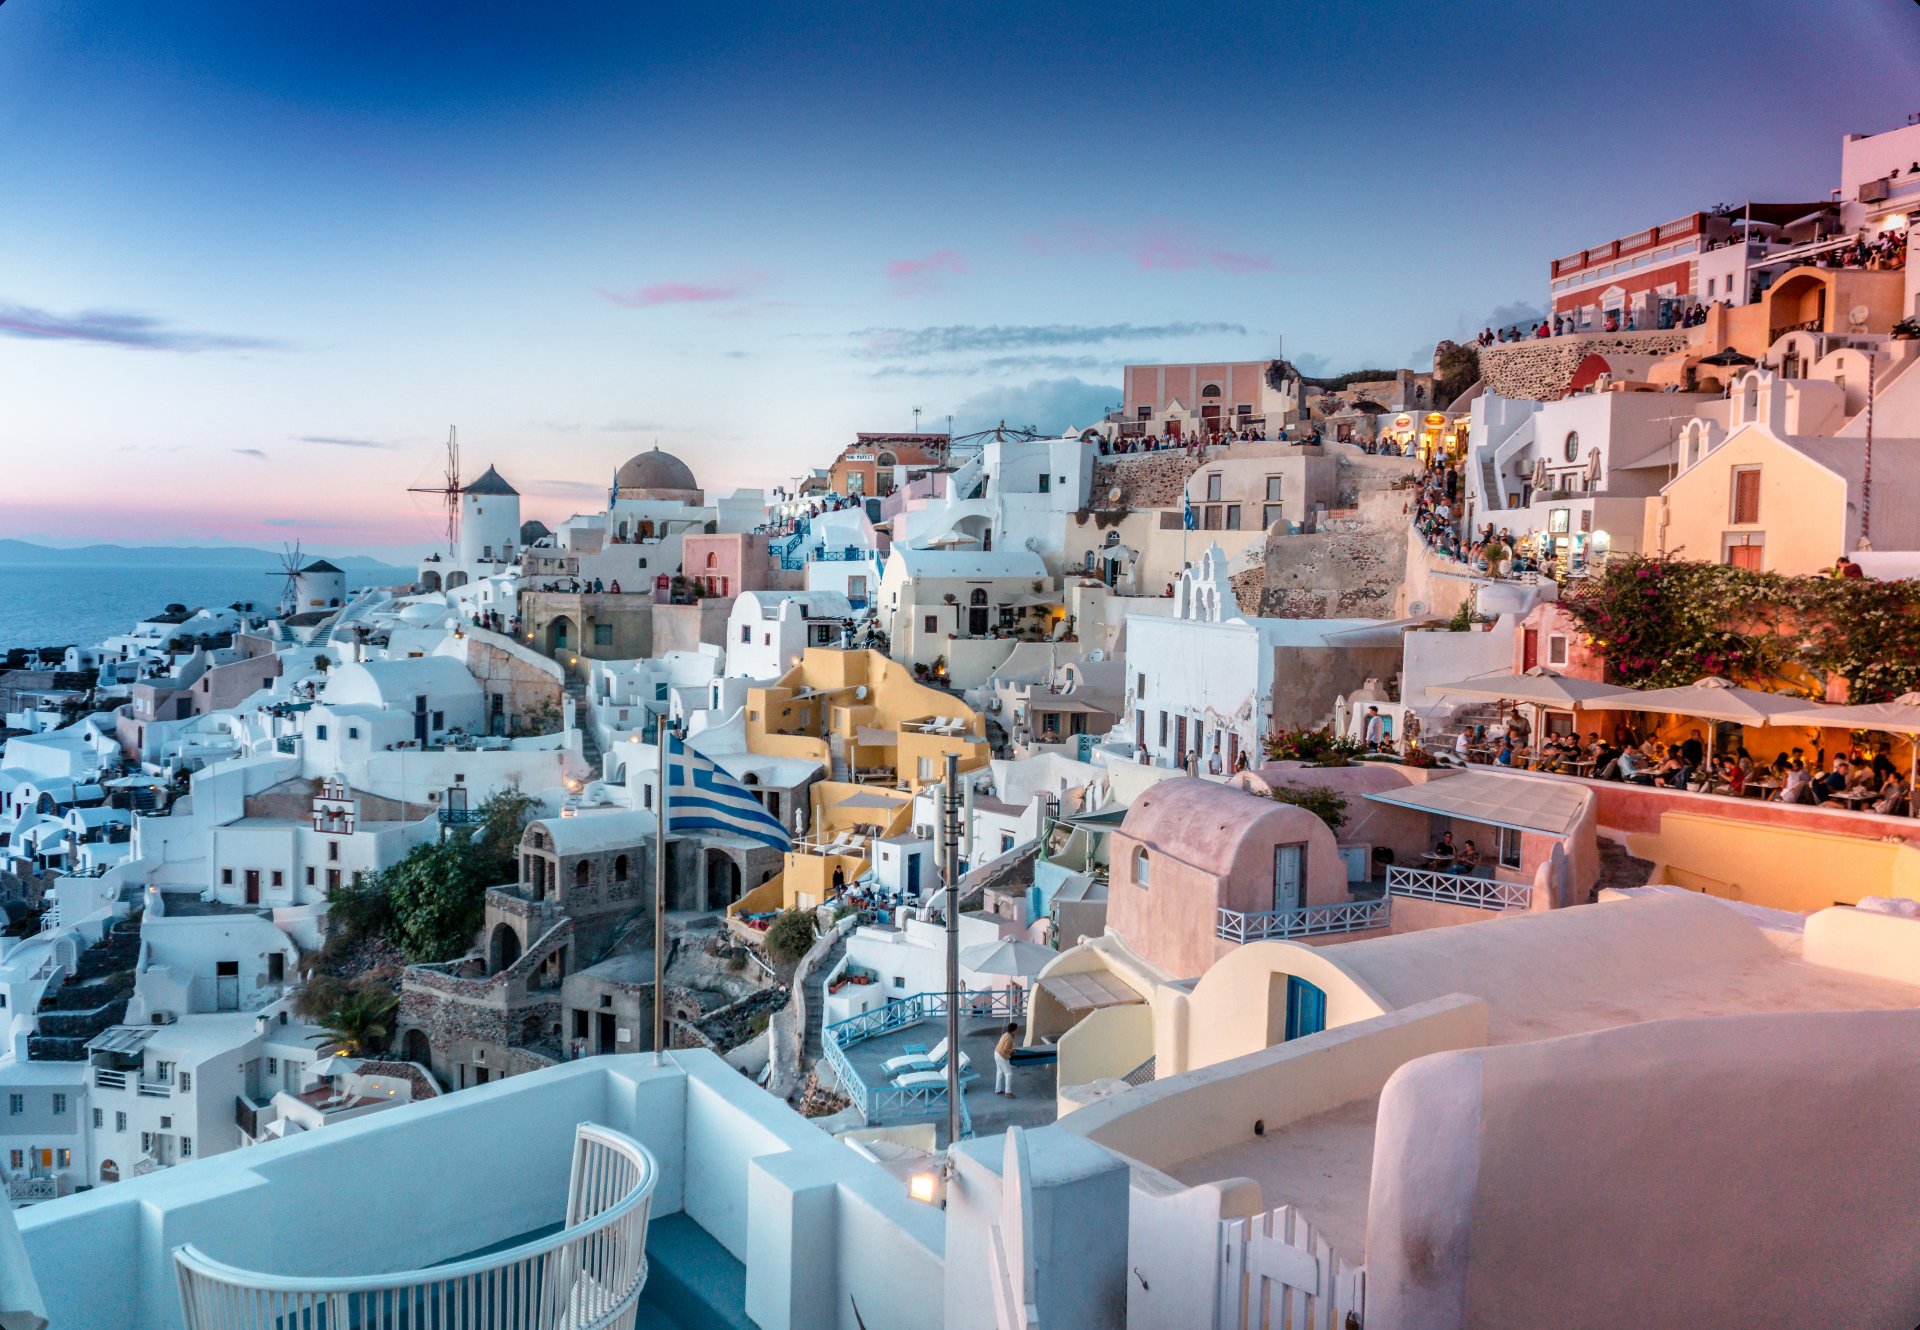 Грек рүү аялахаас өмнө мэдэх хэрэгтэй 10 зүйл 